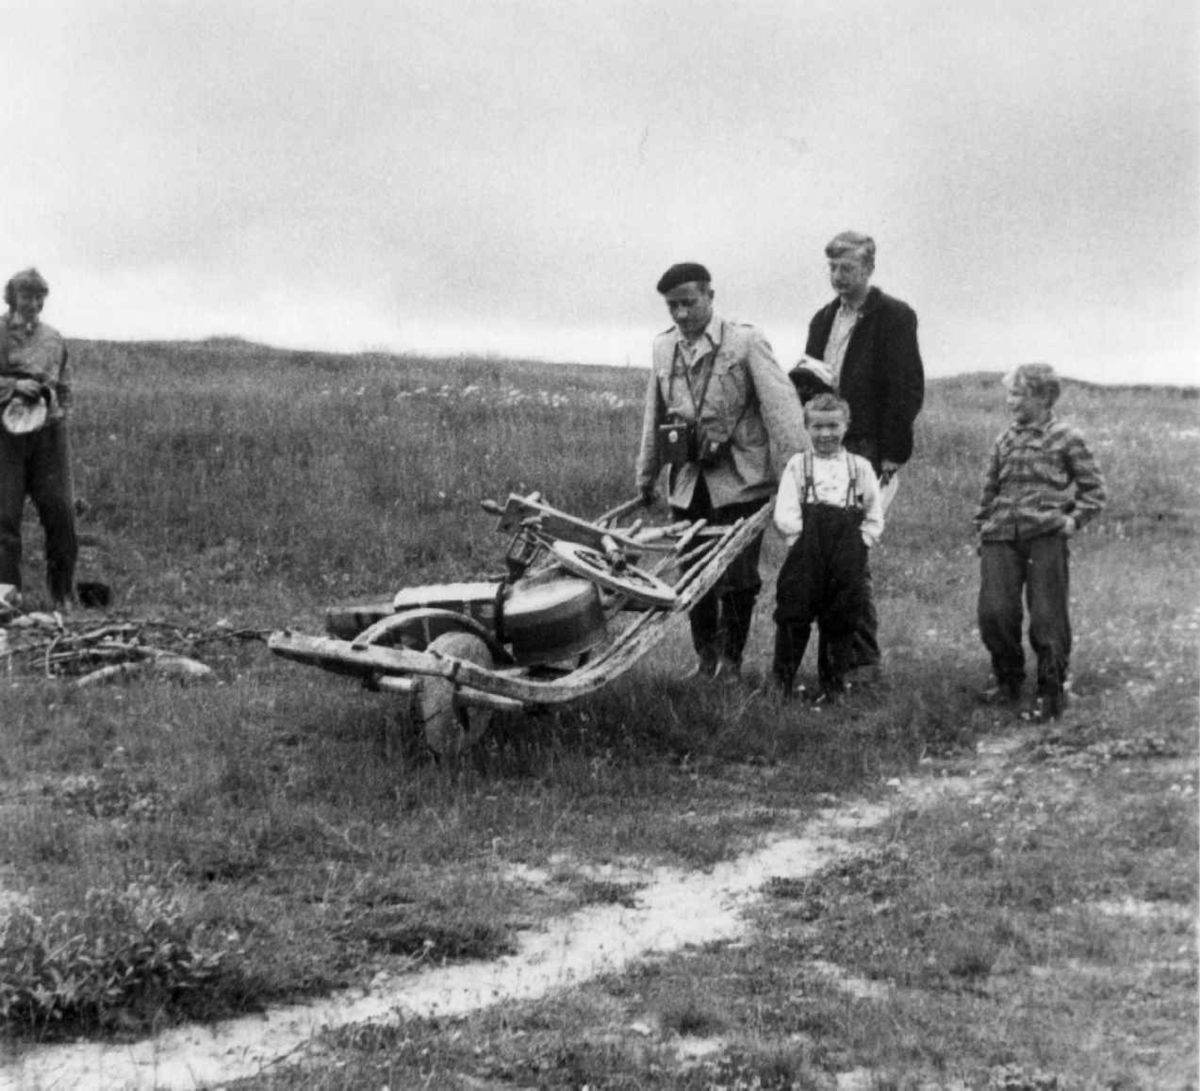 Dr. A. Nesheim med trillebår lastet med forskjellige gjenstander. Ved siden av går to barn og en voksen. Jávrebáinjárga, Kárášjohka/Karasjok 1952.